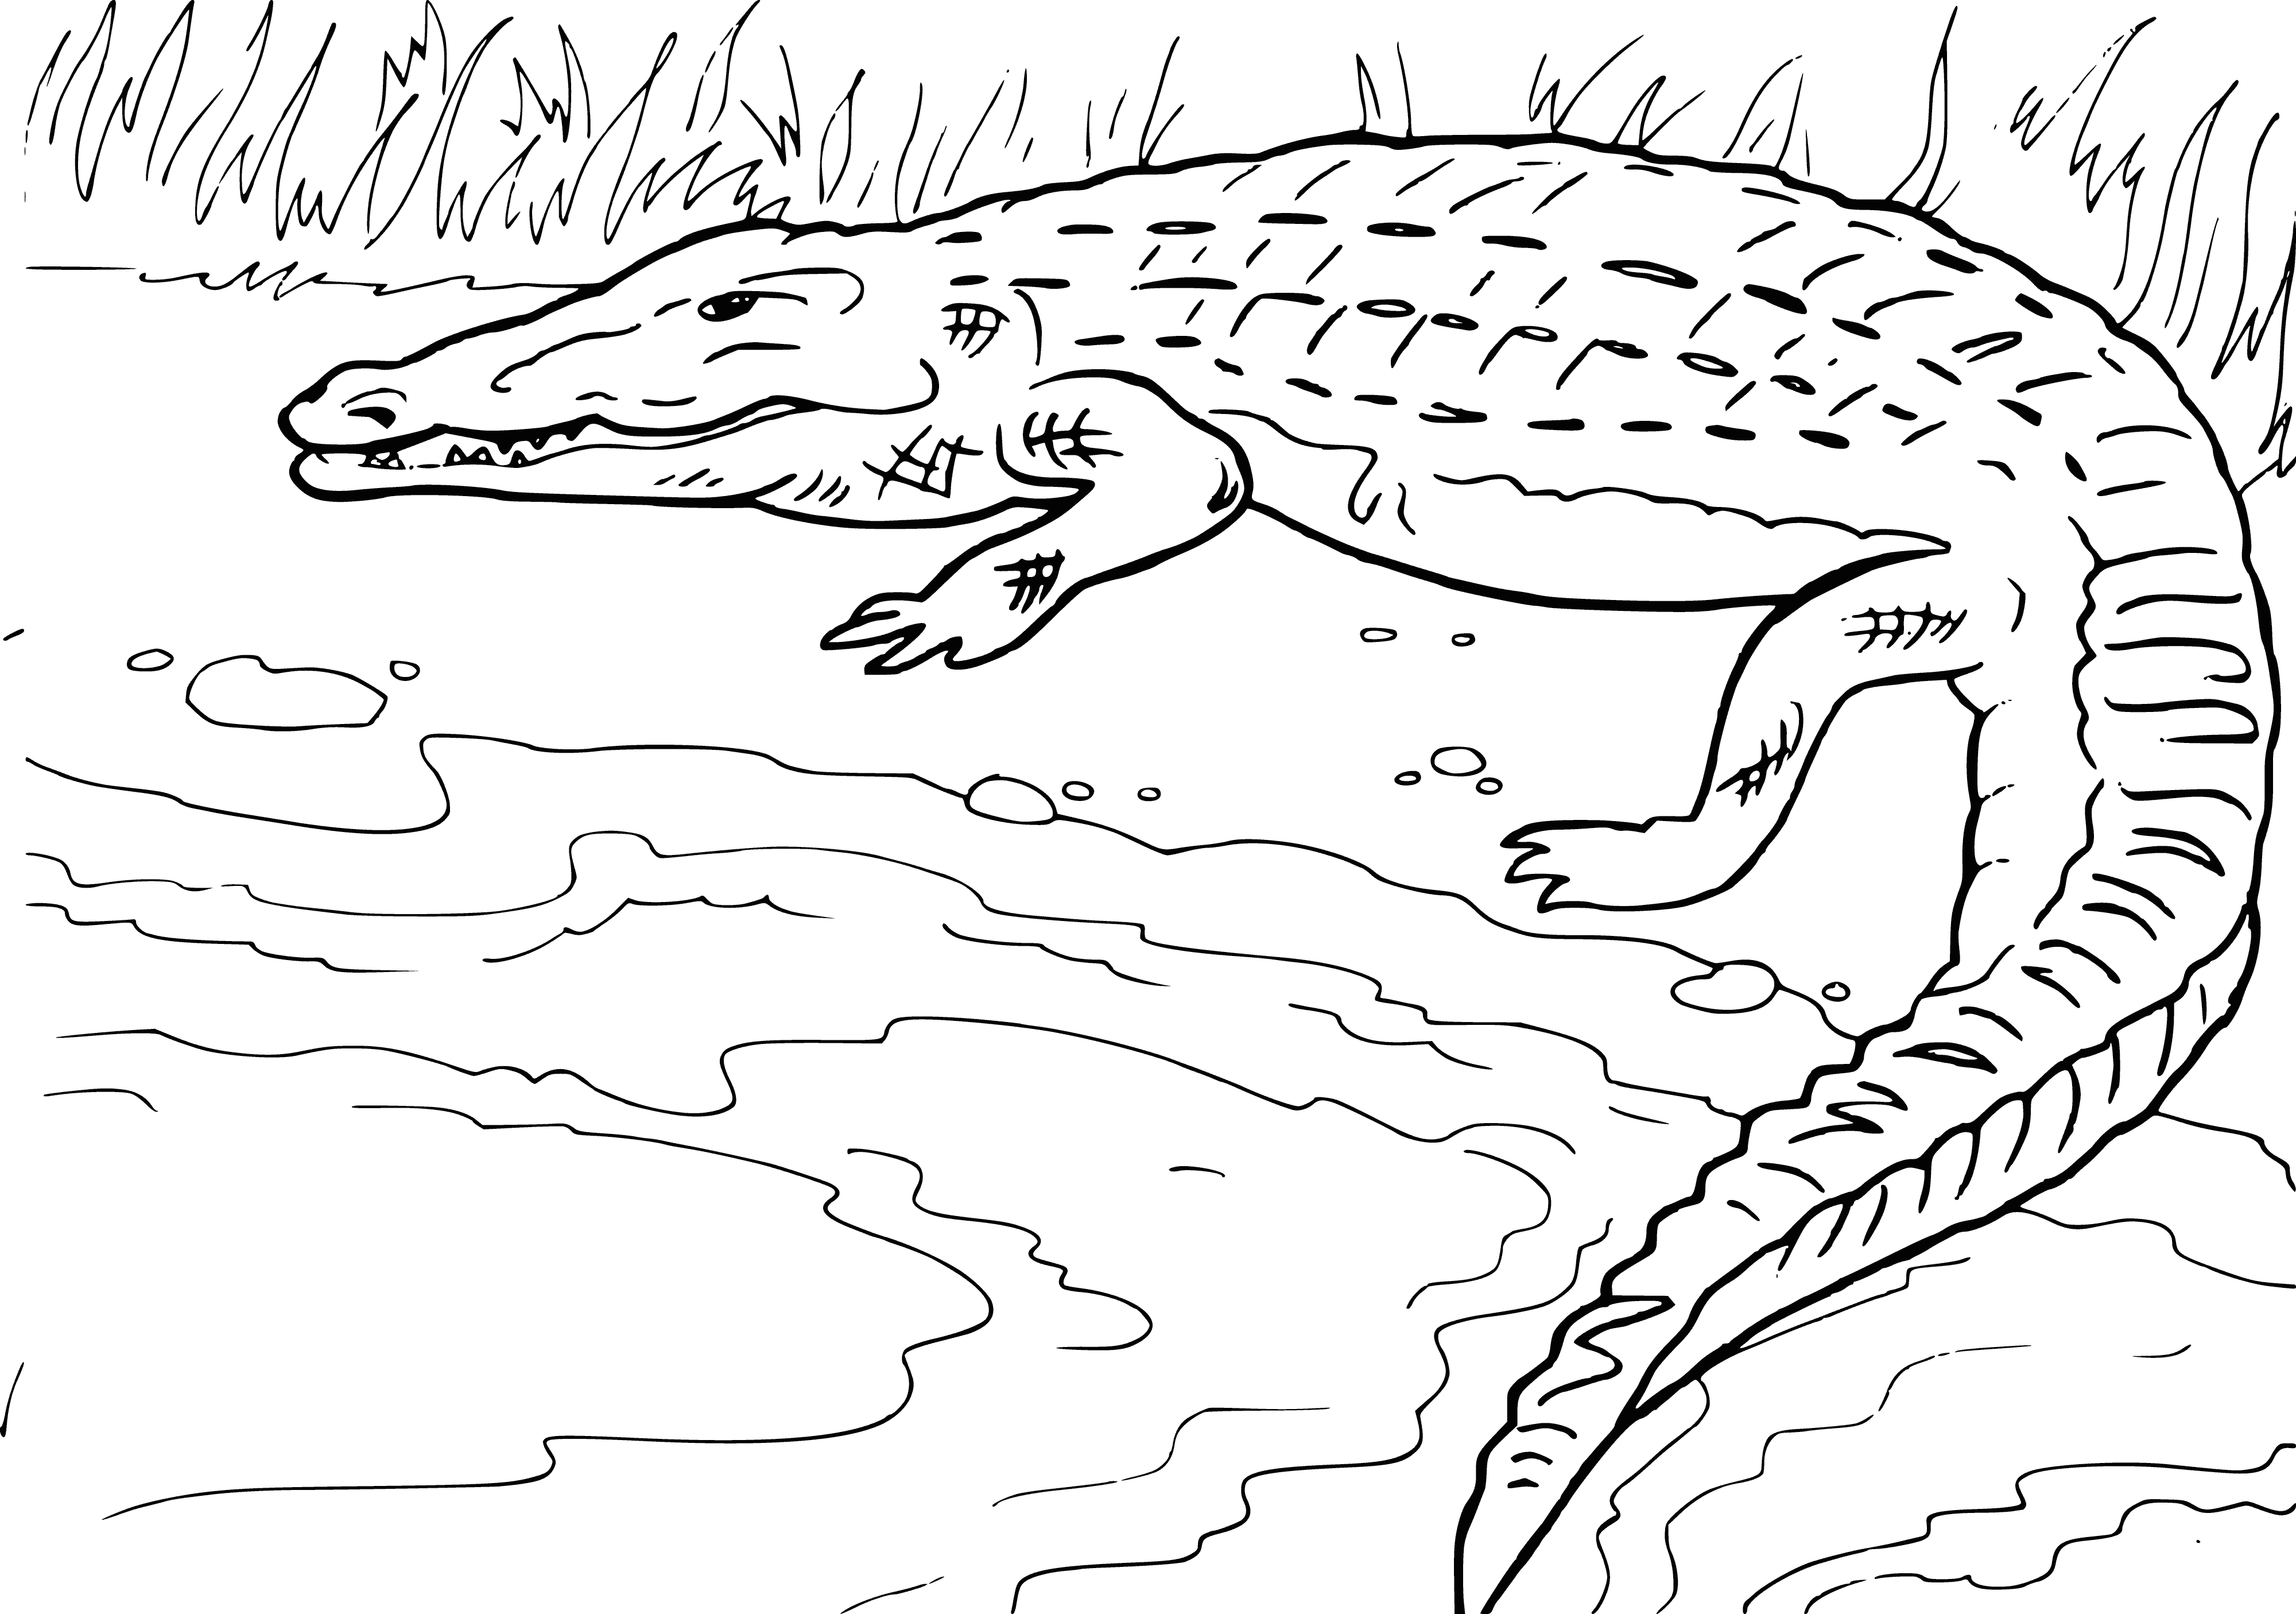 Krokodil kleurplaat